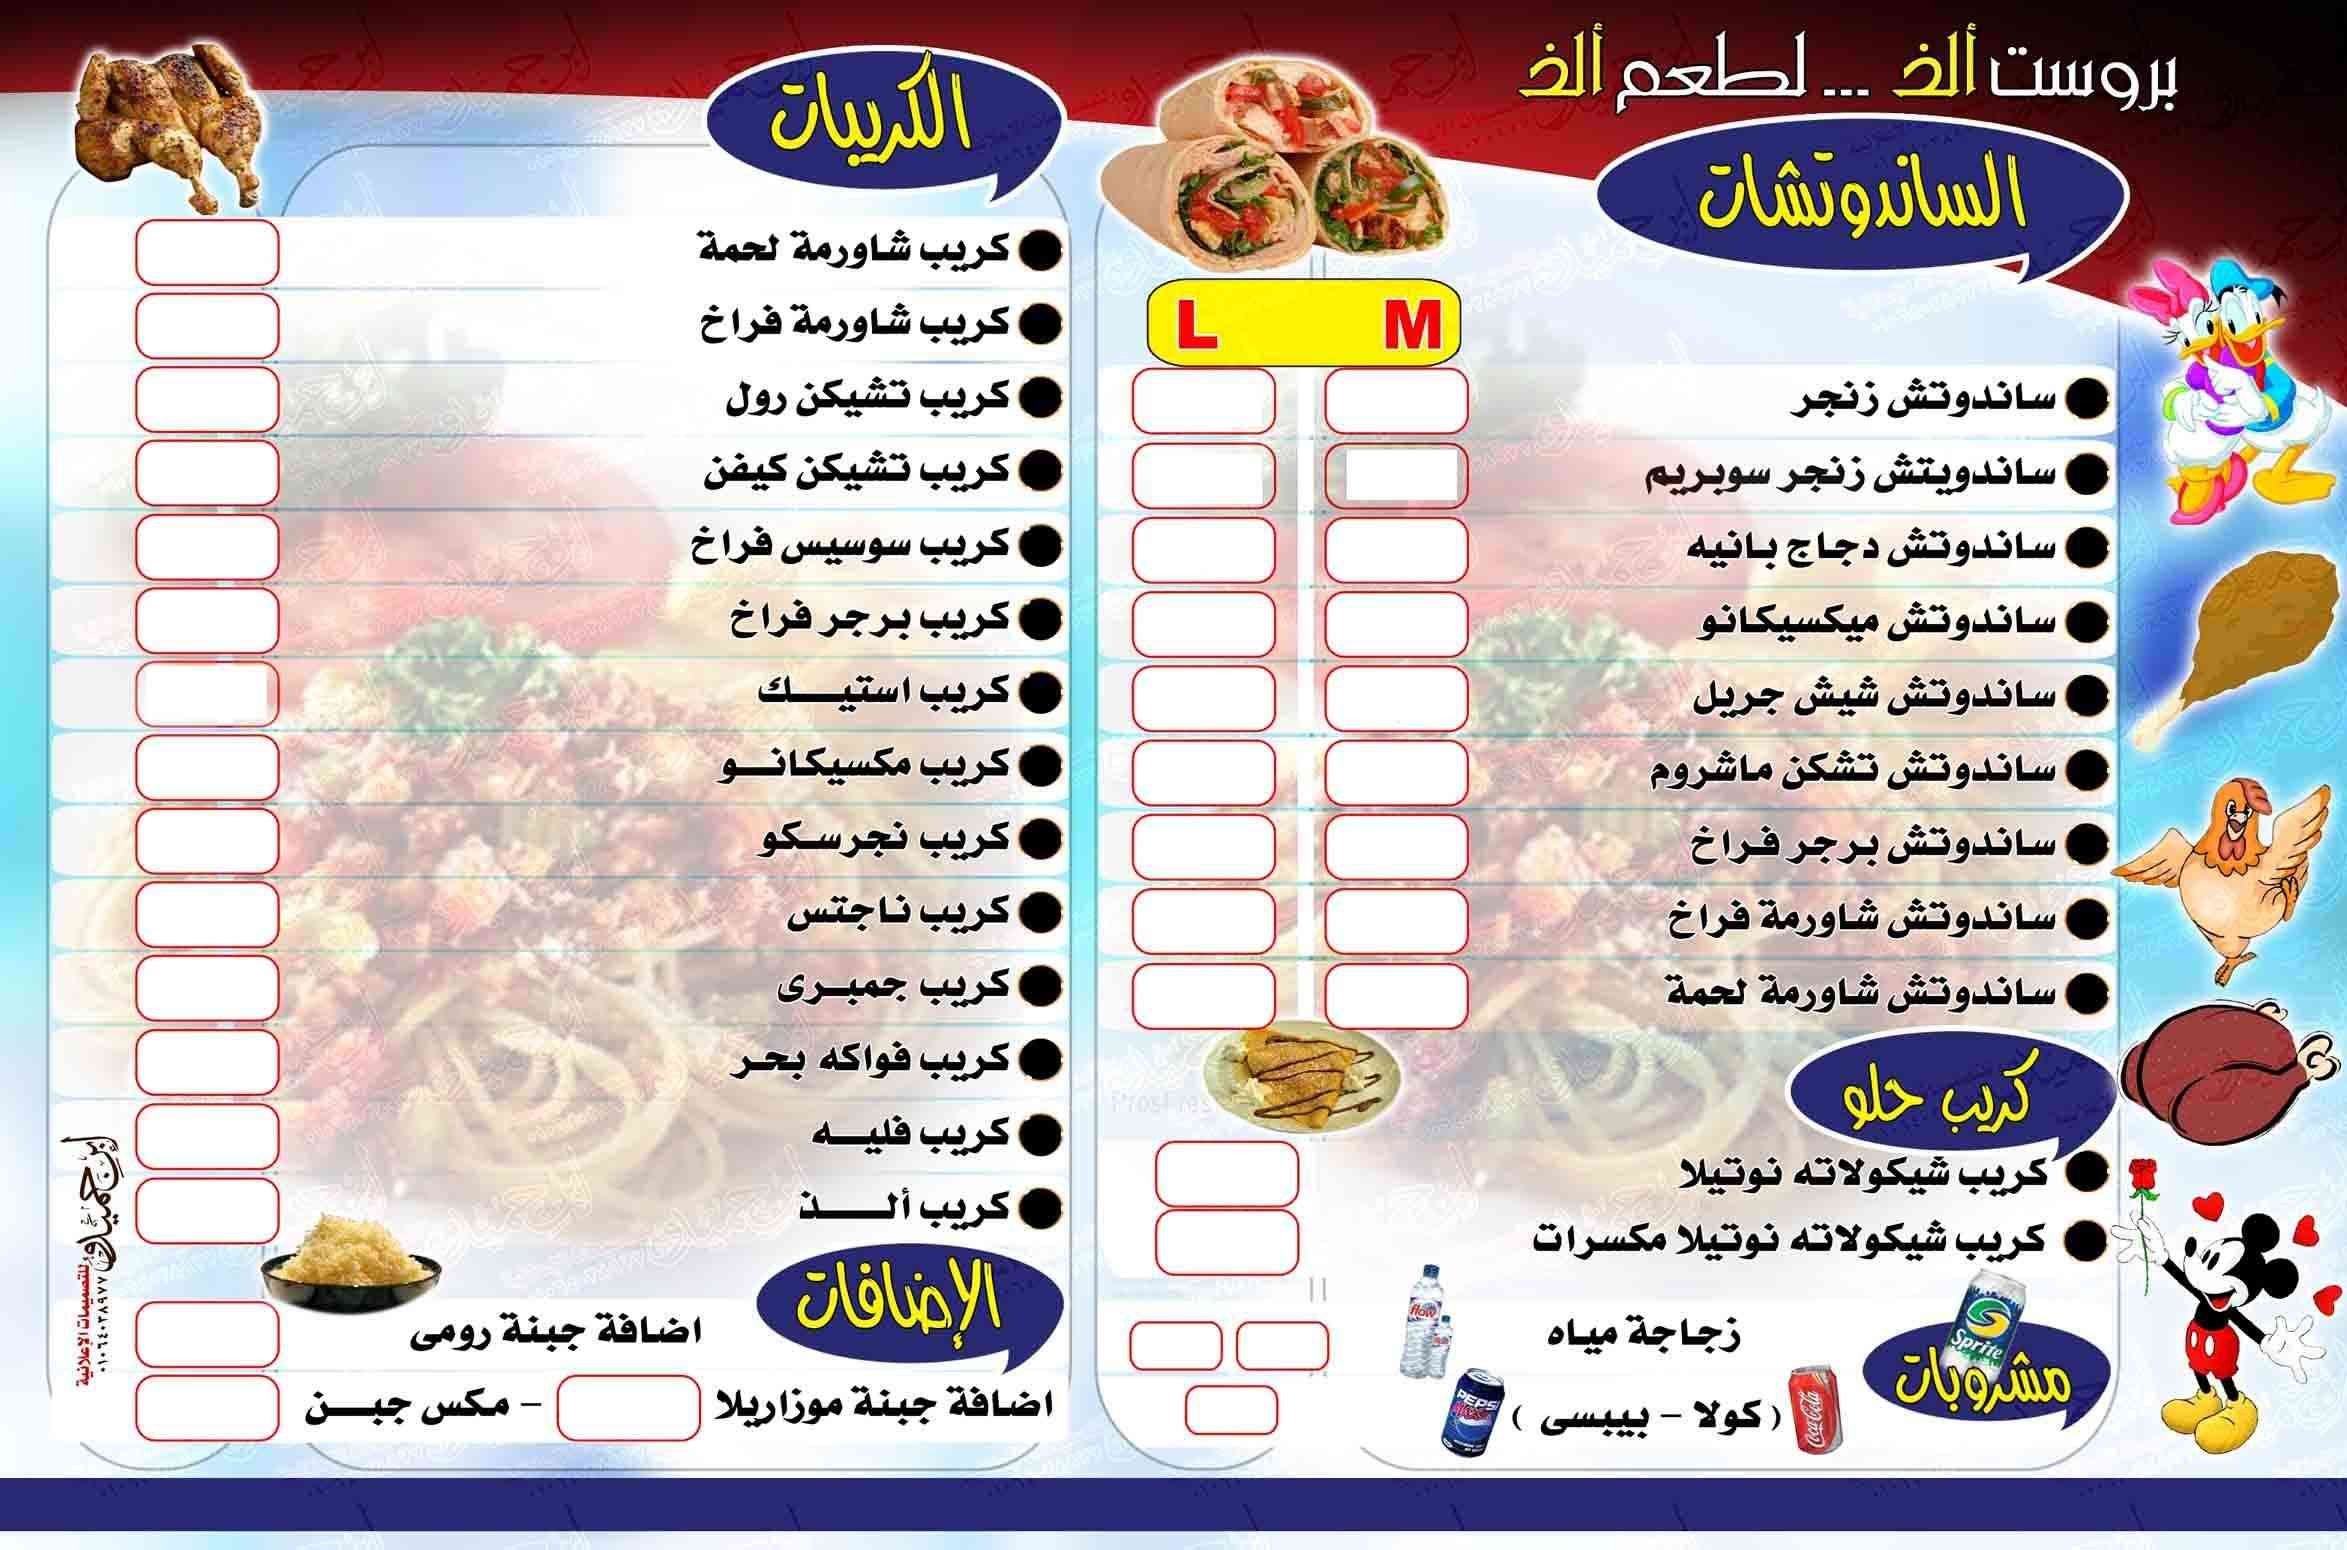 تصميم قائمة اسعار مطعم بروست الذ (Restaurant Alz Menu )  - ابن حميدو لتصميمات الفوتوشوب  0211